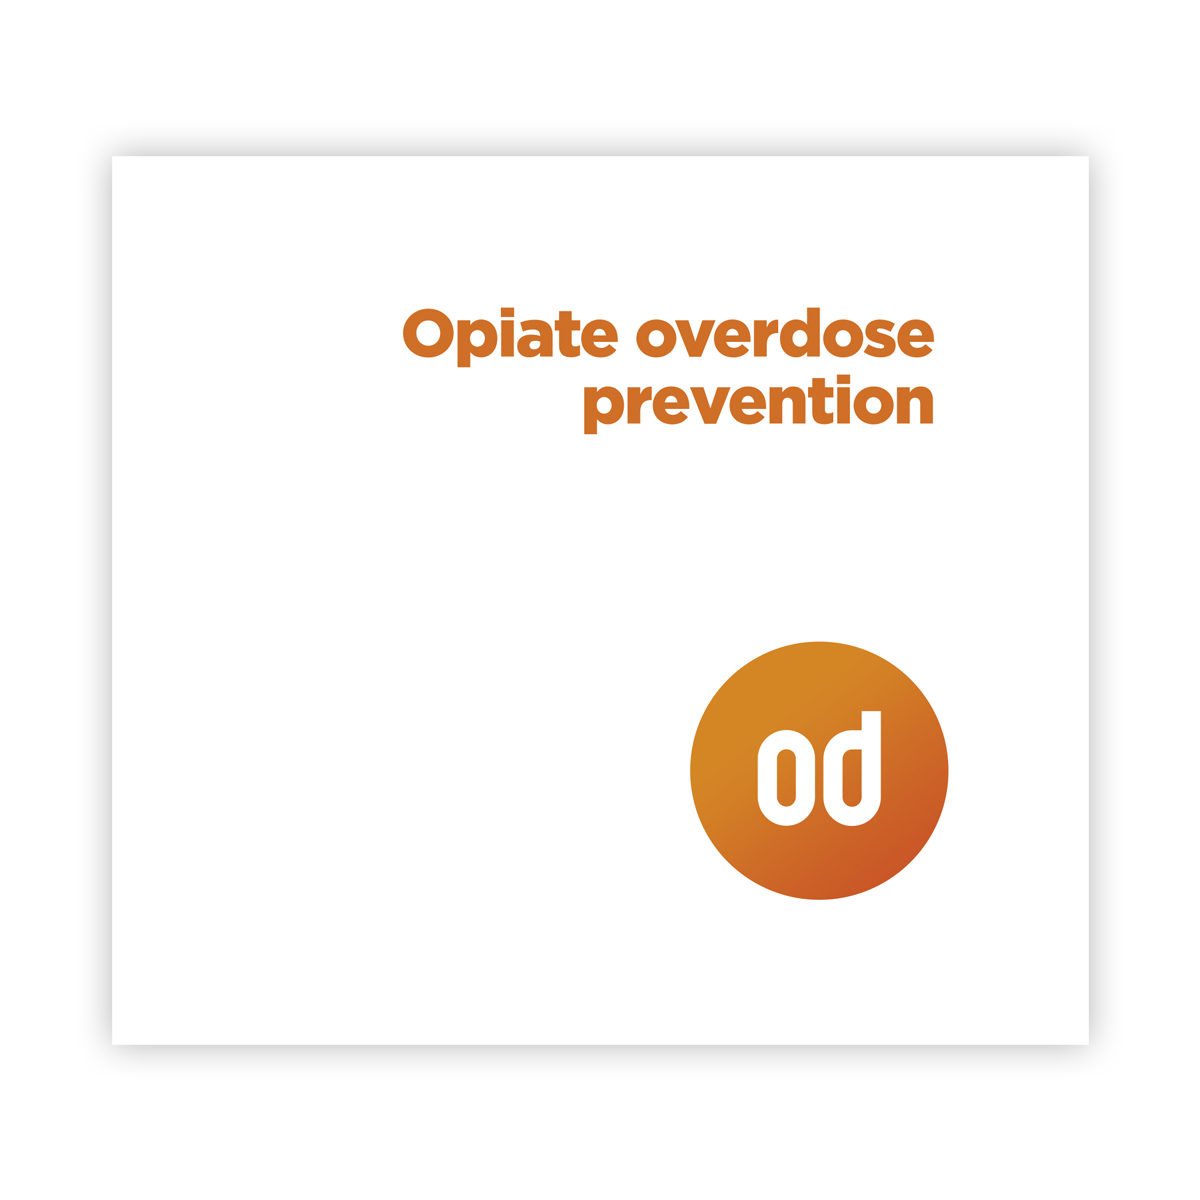 Opiate overdose prevention - a complete guide